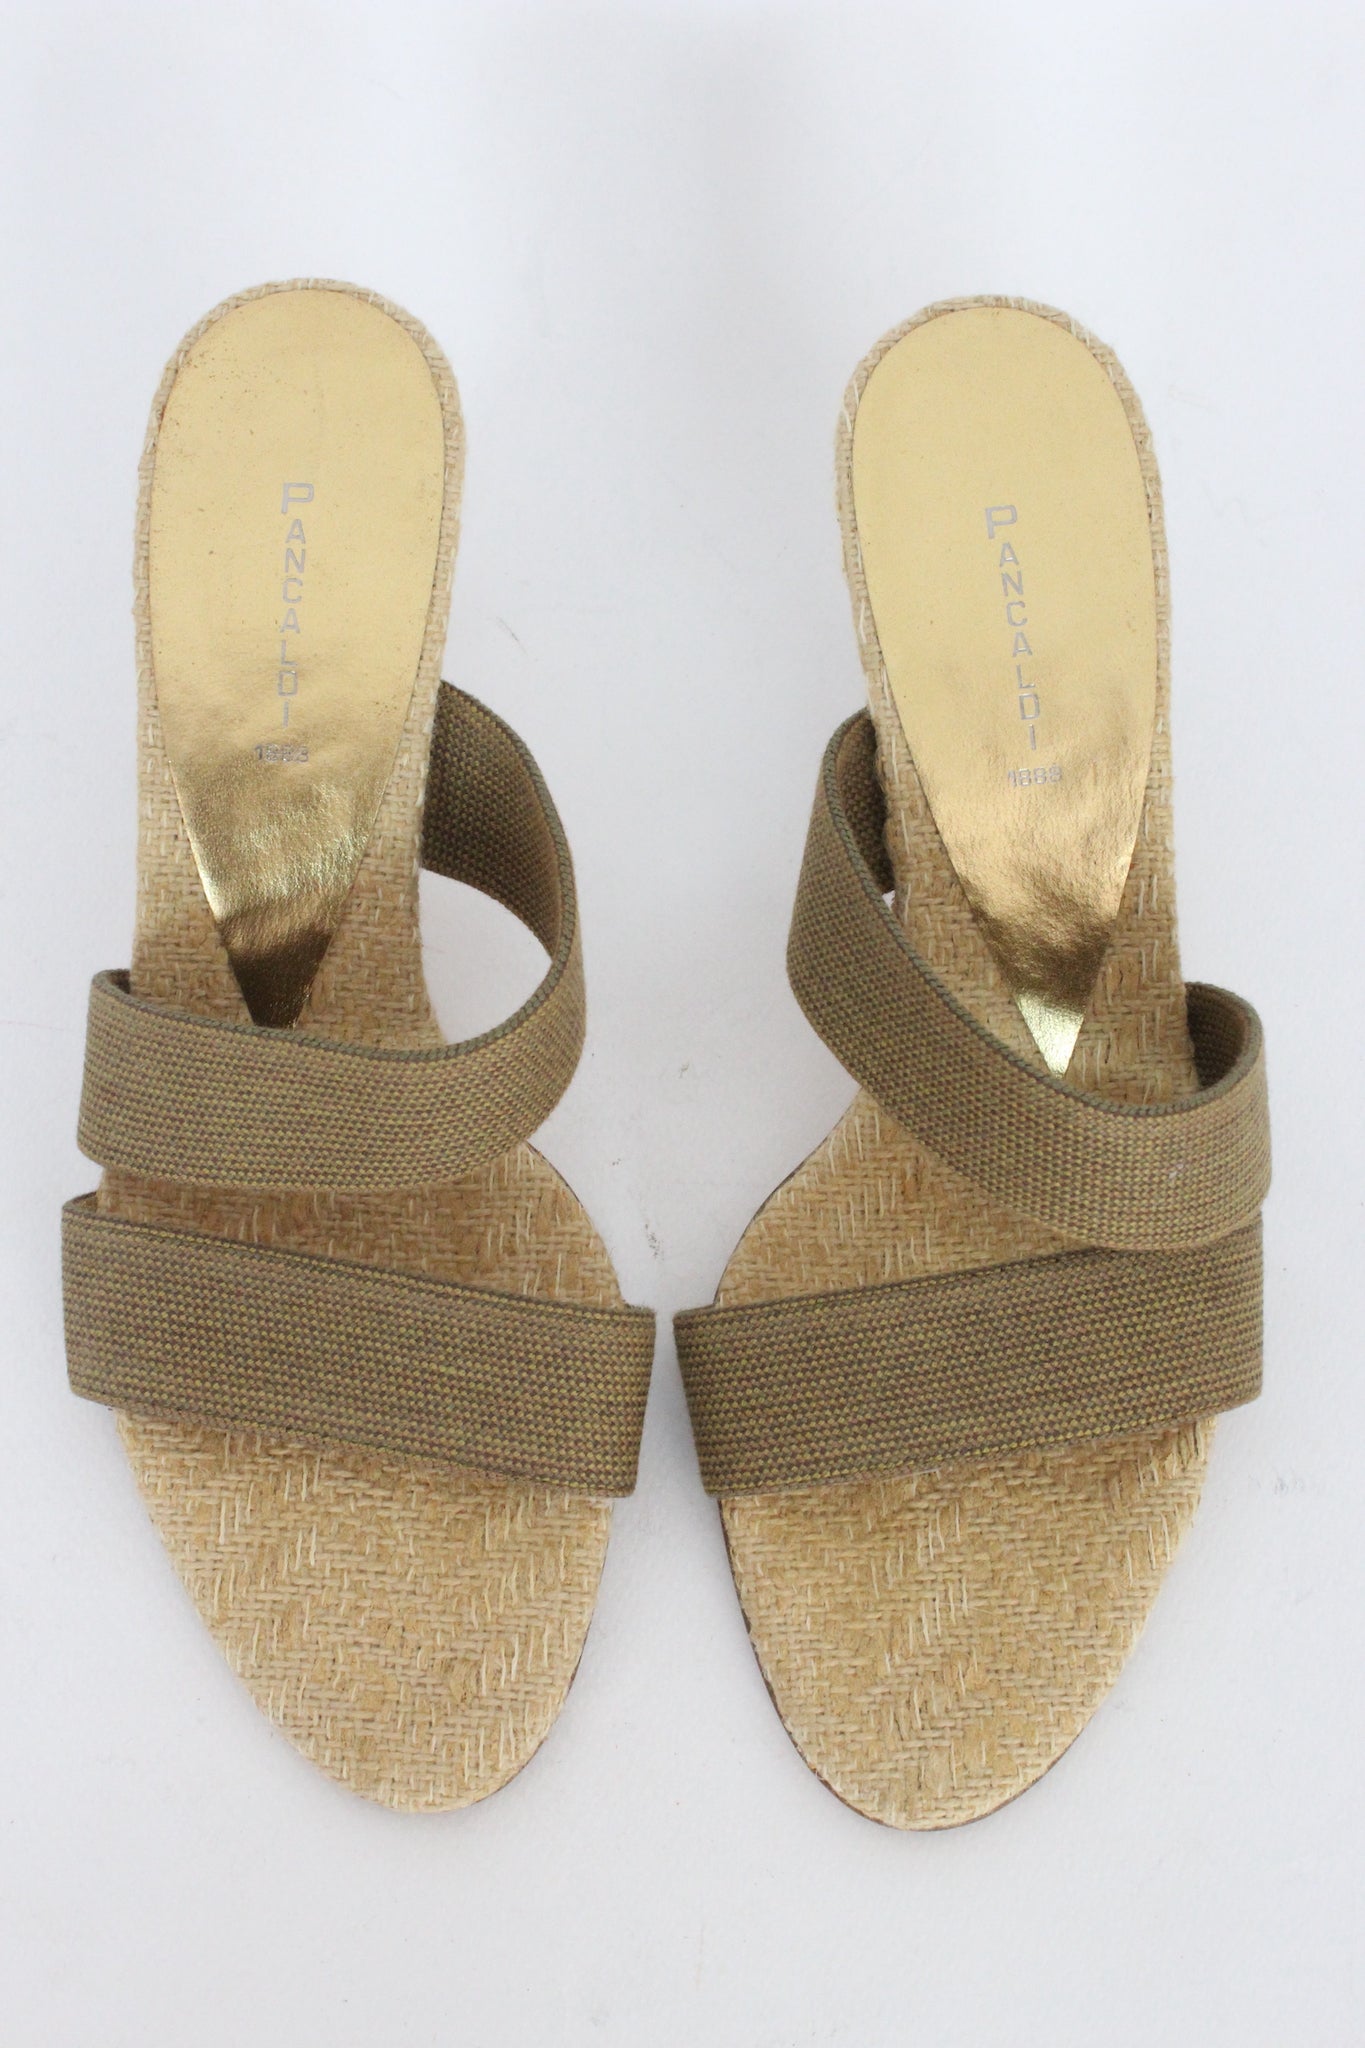 Pancaldi Leather Beige Vintage Sandal Shoes 90s